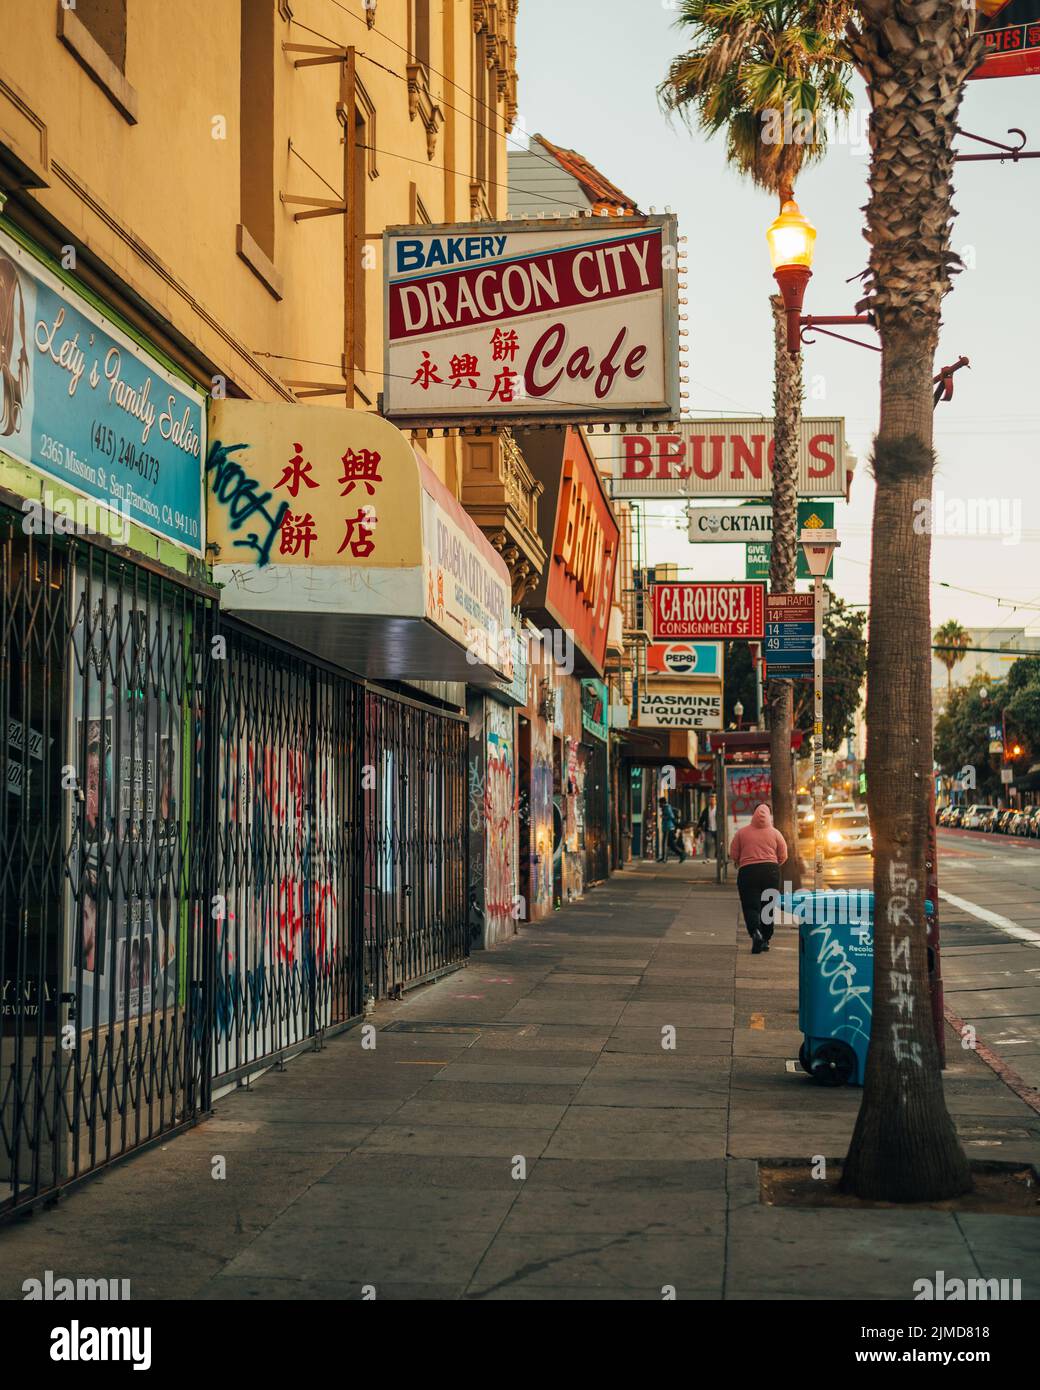 Dragon City Bakery & Cafe, en el Distrito de la Misión, San Francisco, California Foto de stock